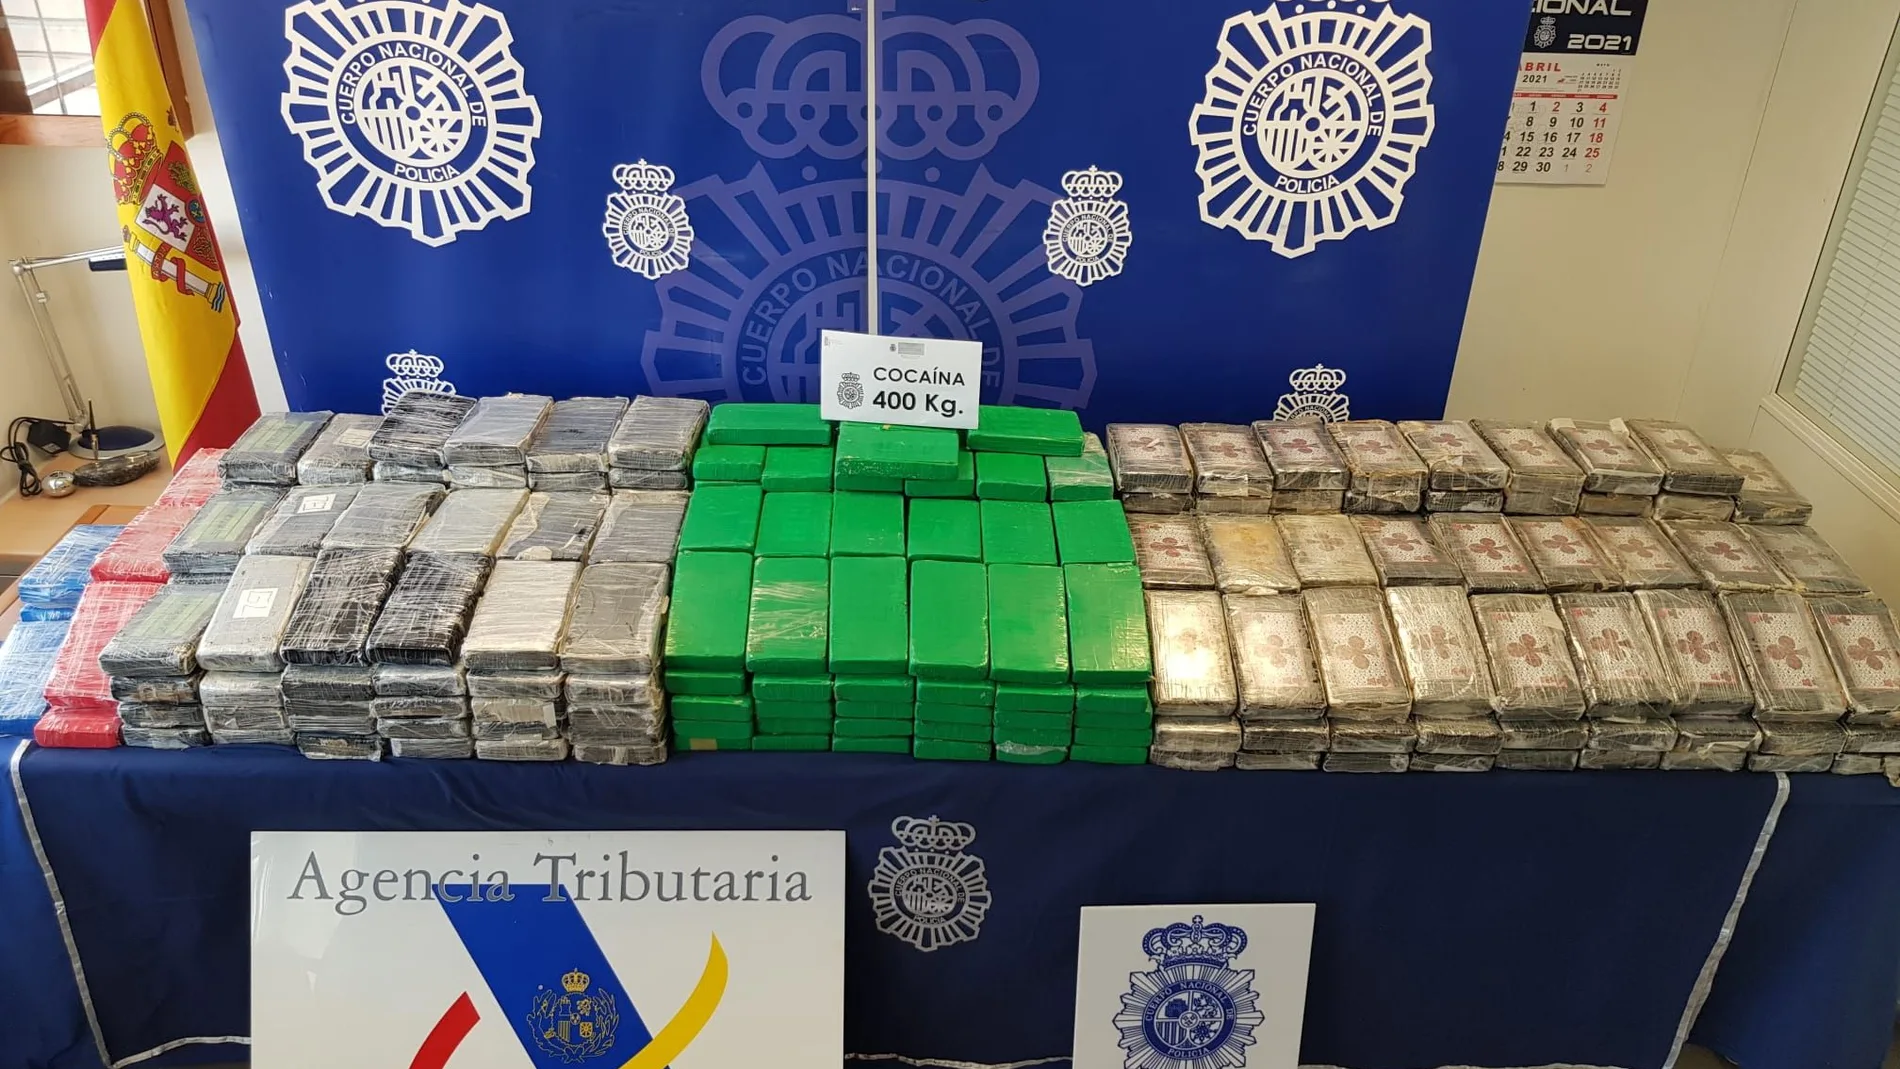 Cargamento de droga incautado por la Policía en una empresa de Valladolid